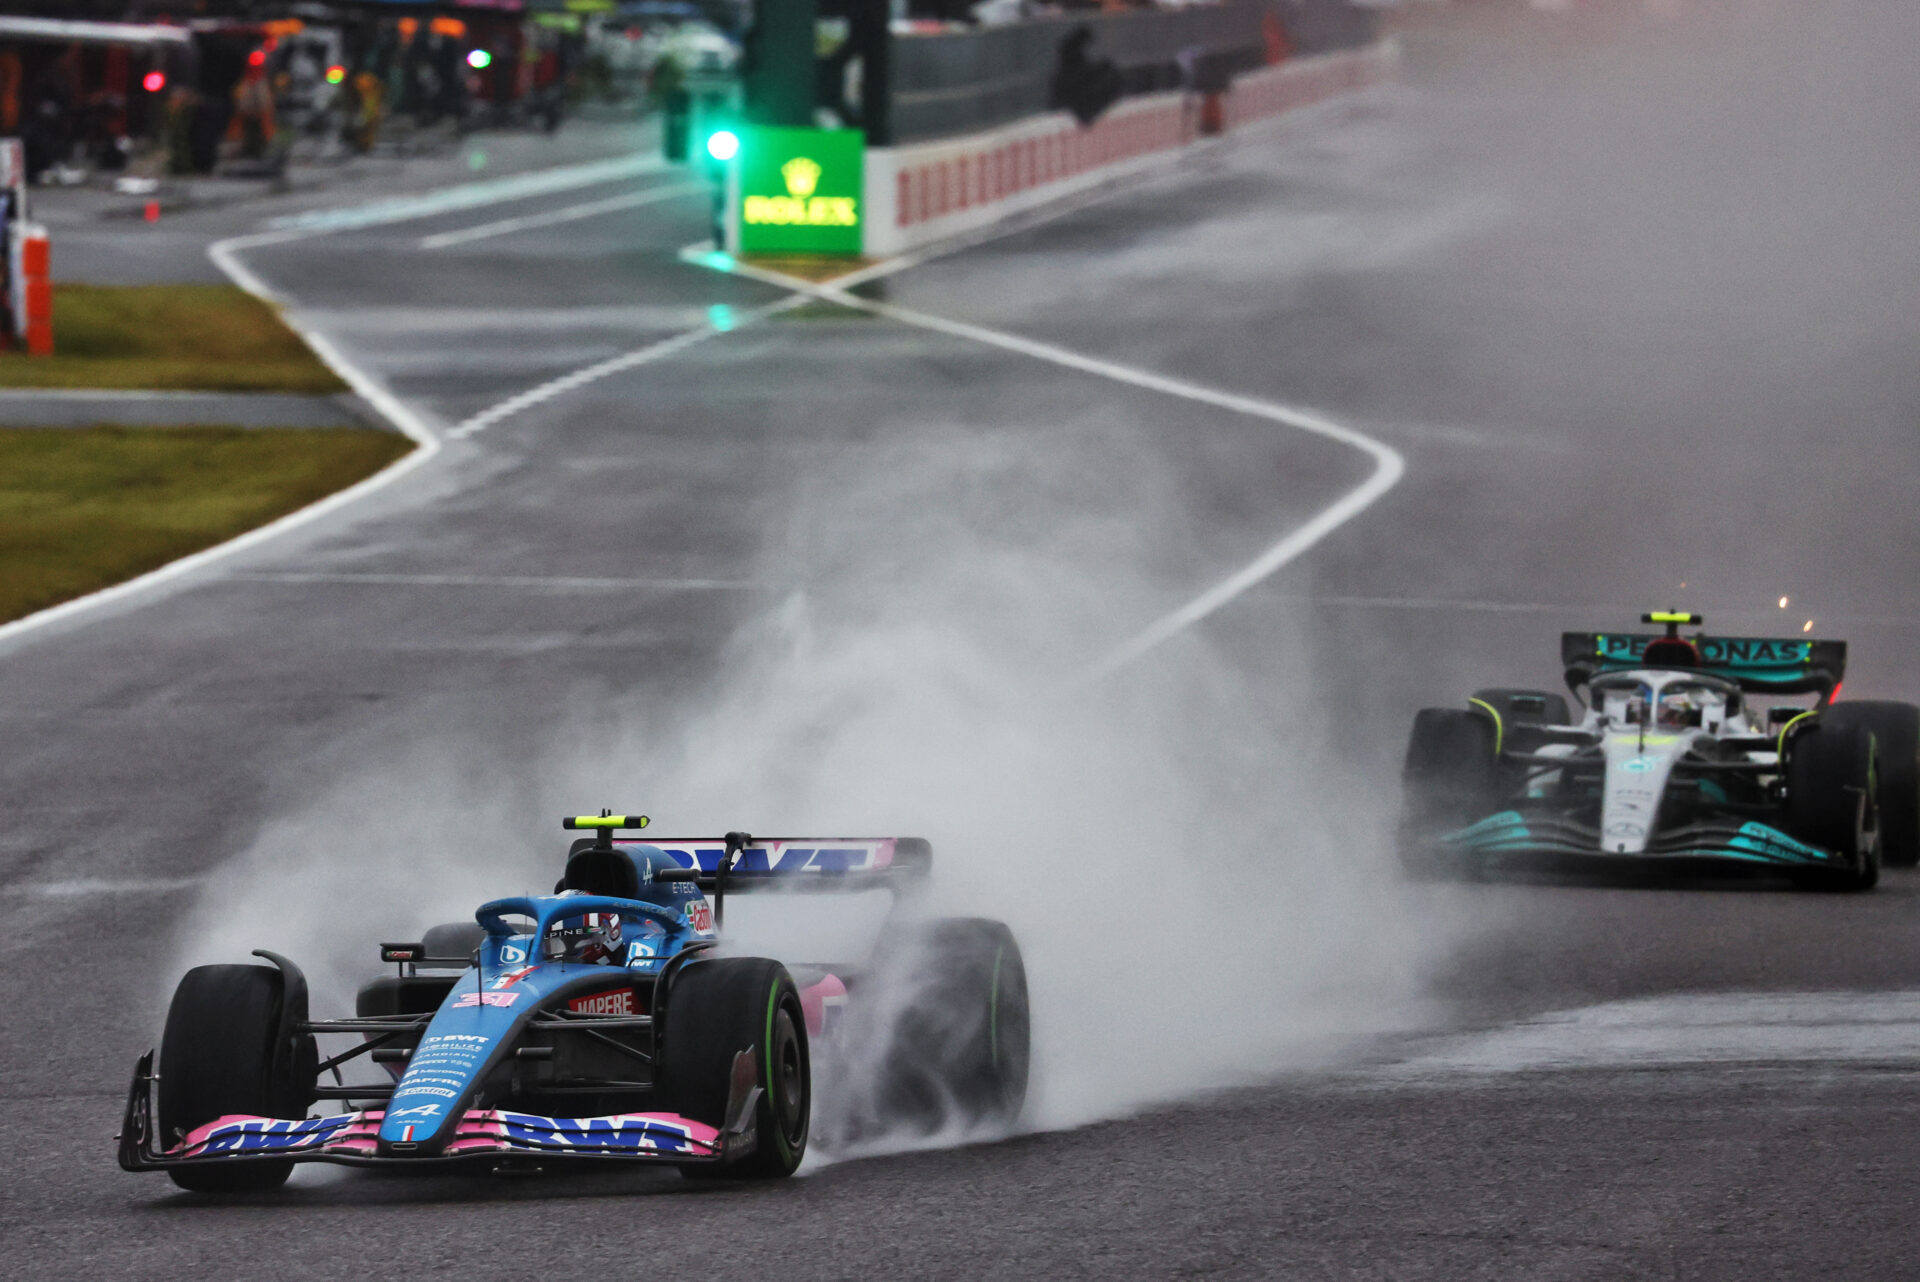 F1 - Esteban Ocon avait l'impression d'être au karting avec Hamilton à ses trousses